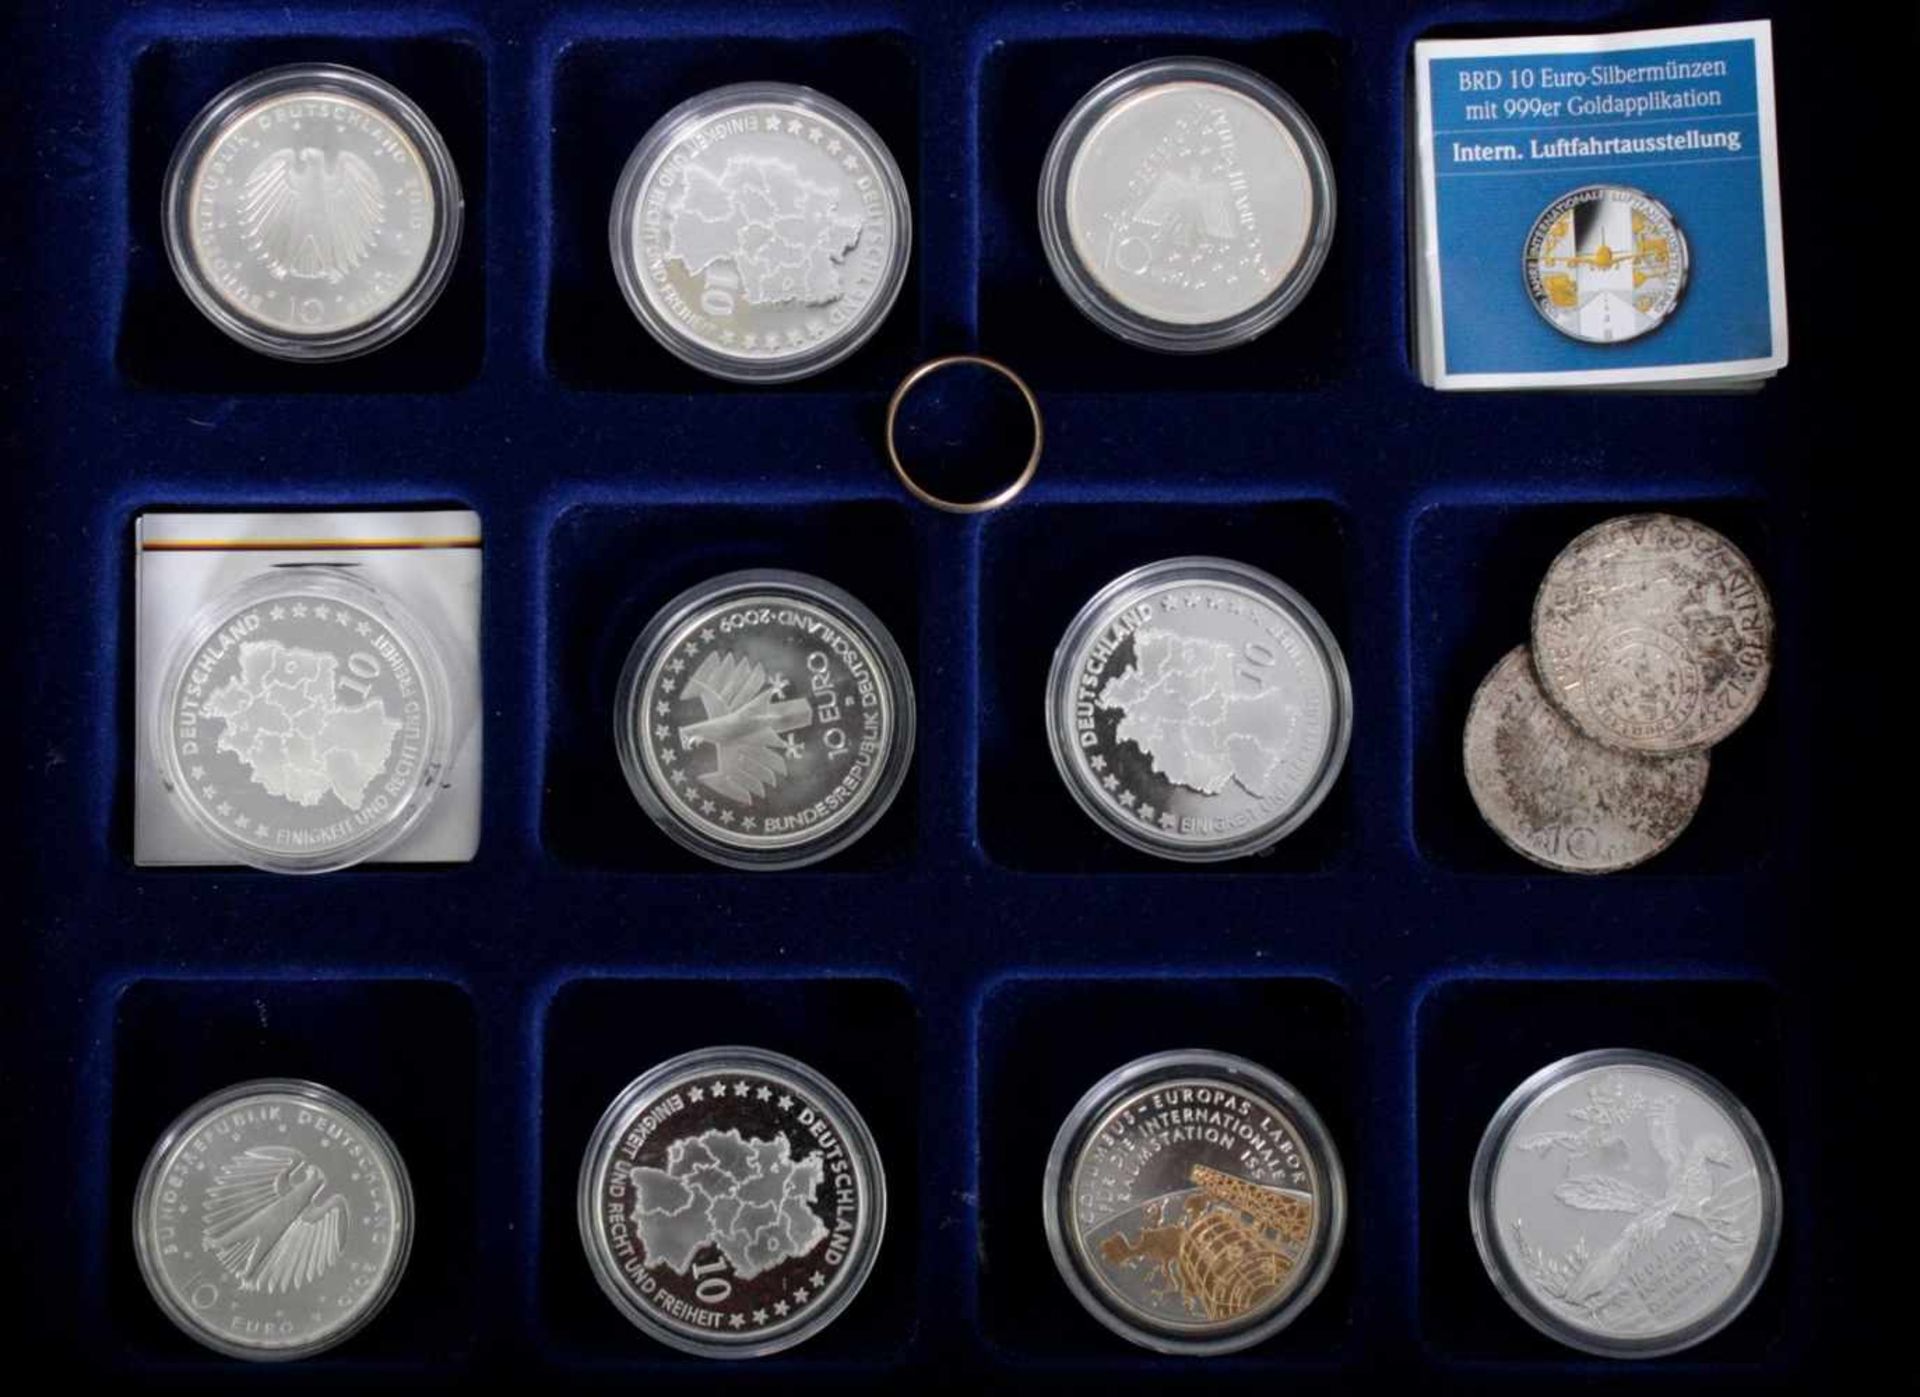 Kleiner Münznachlass und Goldring in HolzschatulleEnthalten sind 10 10-Euro Silbermünzen in